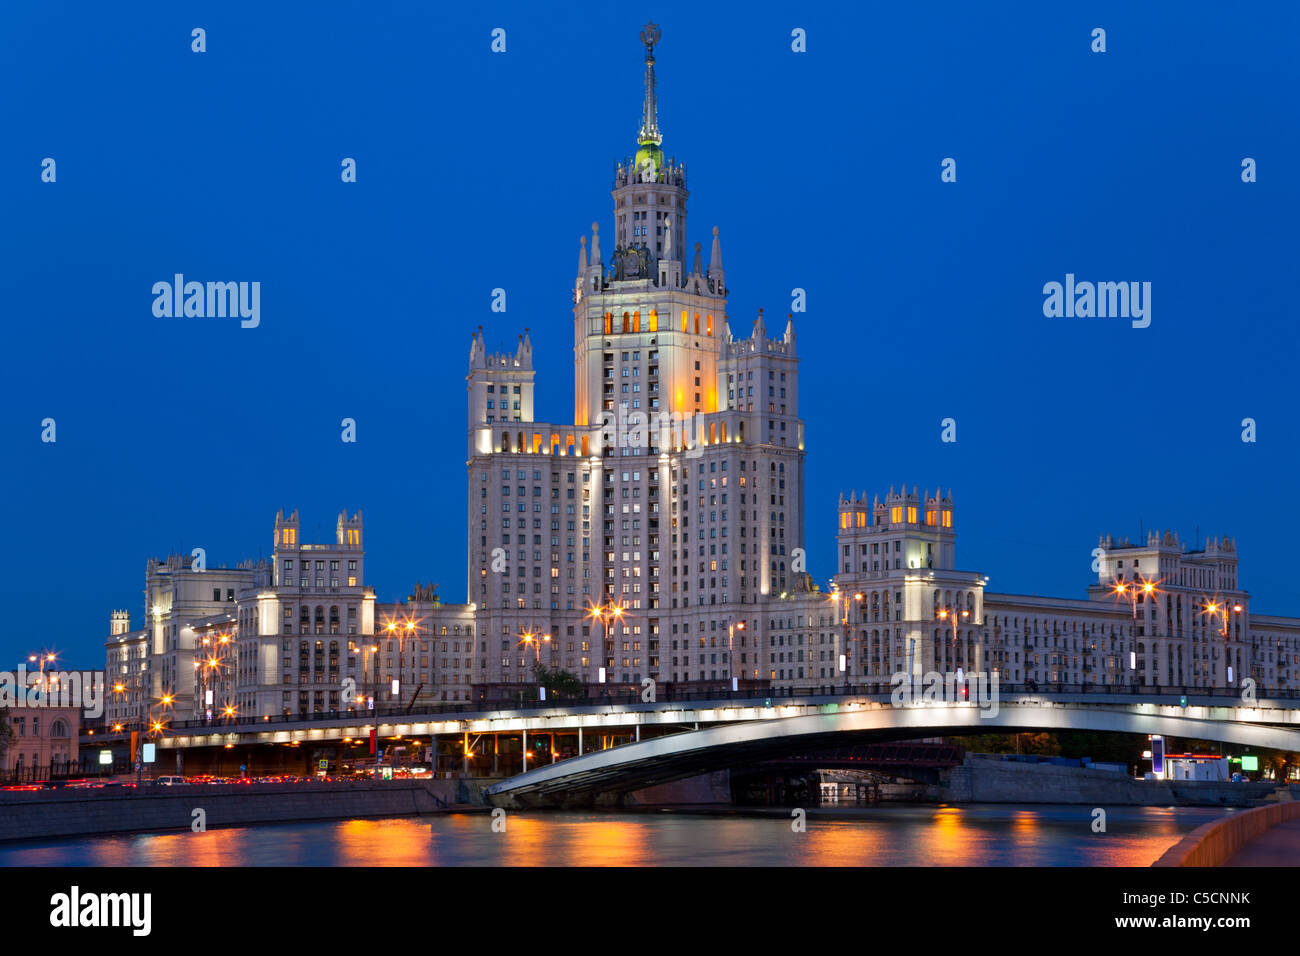 Hochhaus am Kotelnicheskaya Ufer in Moskau bei Nacht, Russland. Stockfoto